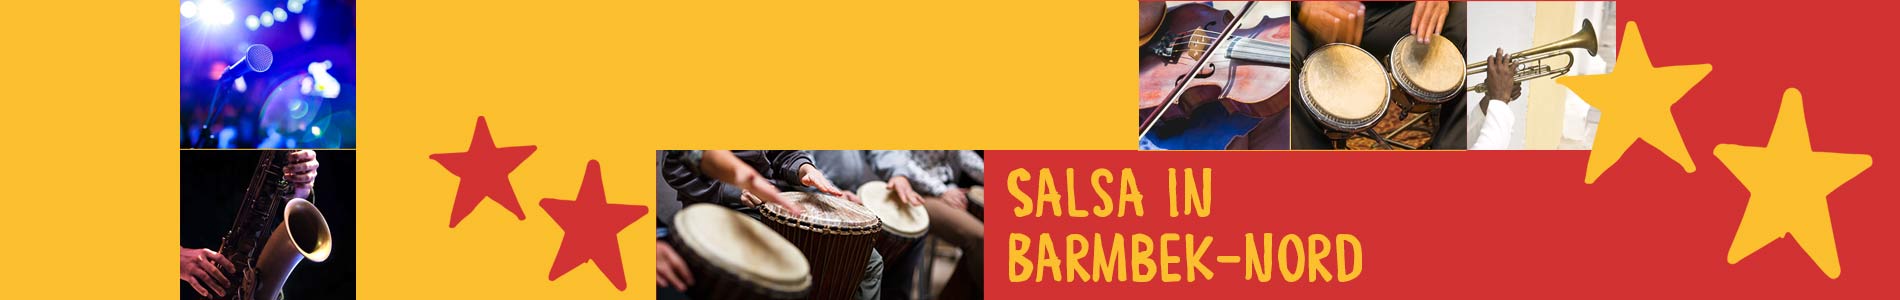 Salsa in Barmbek-Nord – Salsa lernen und tanzen, Tanzkurse, Partys, Veranstaltungen